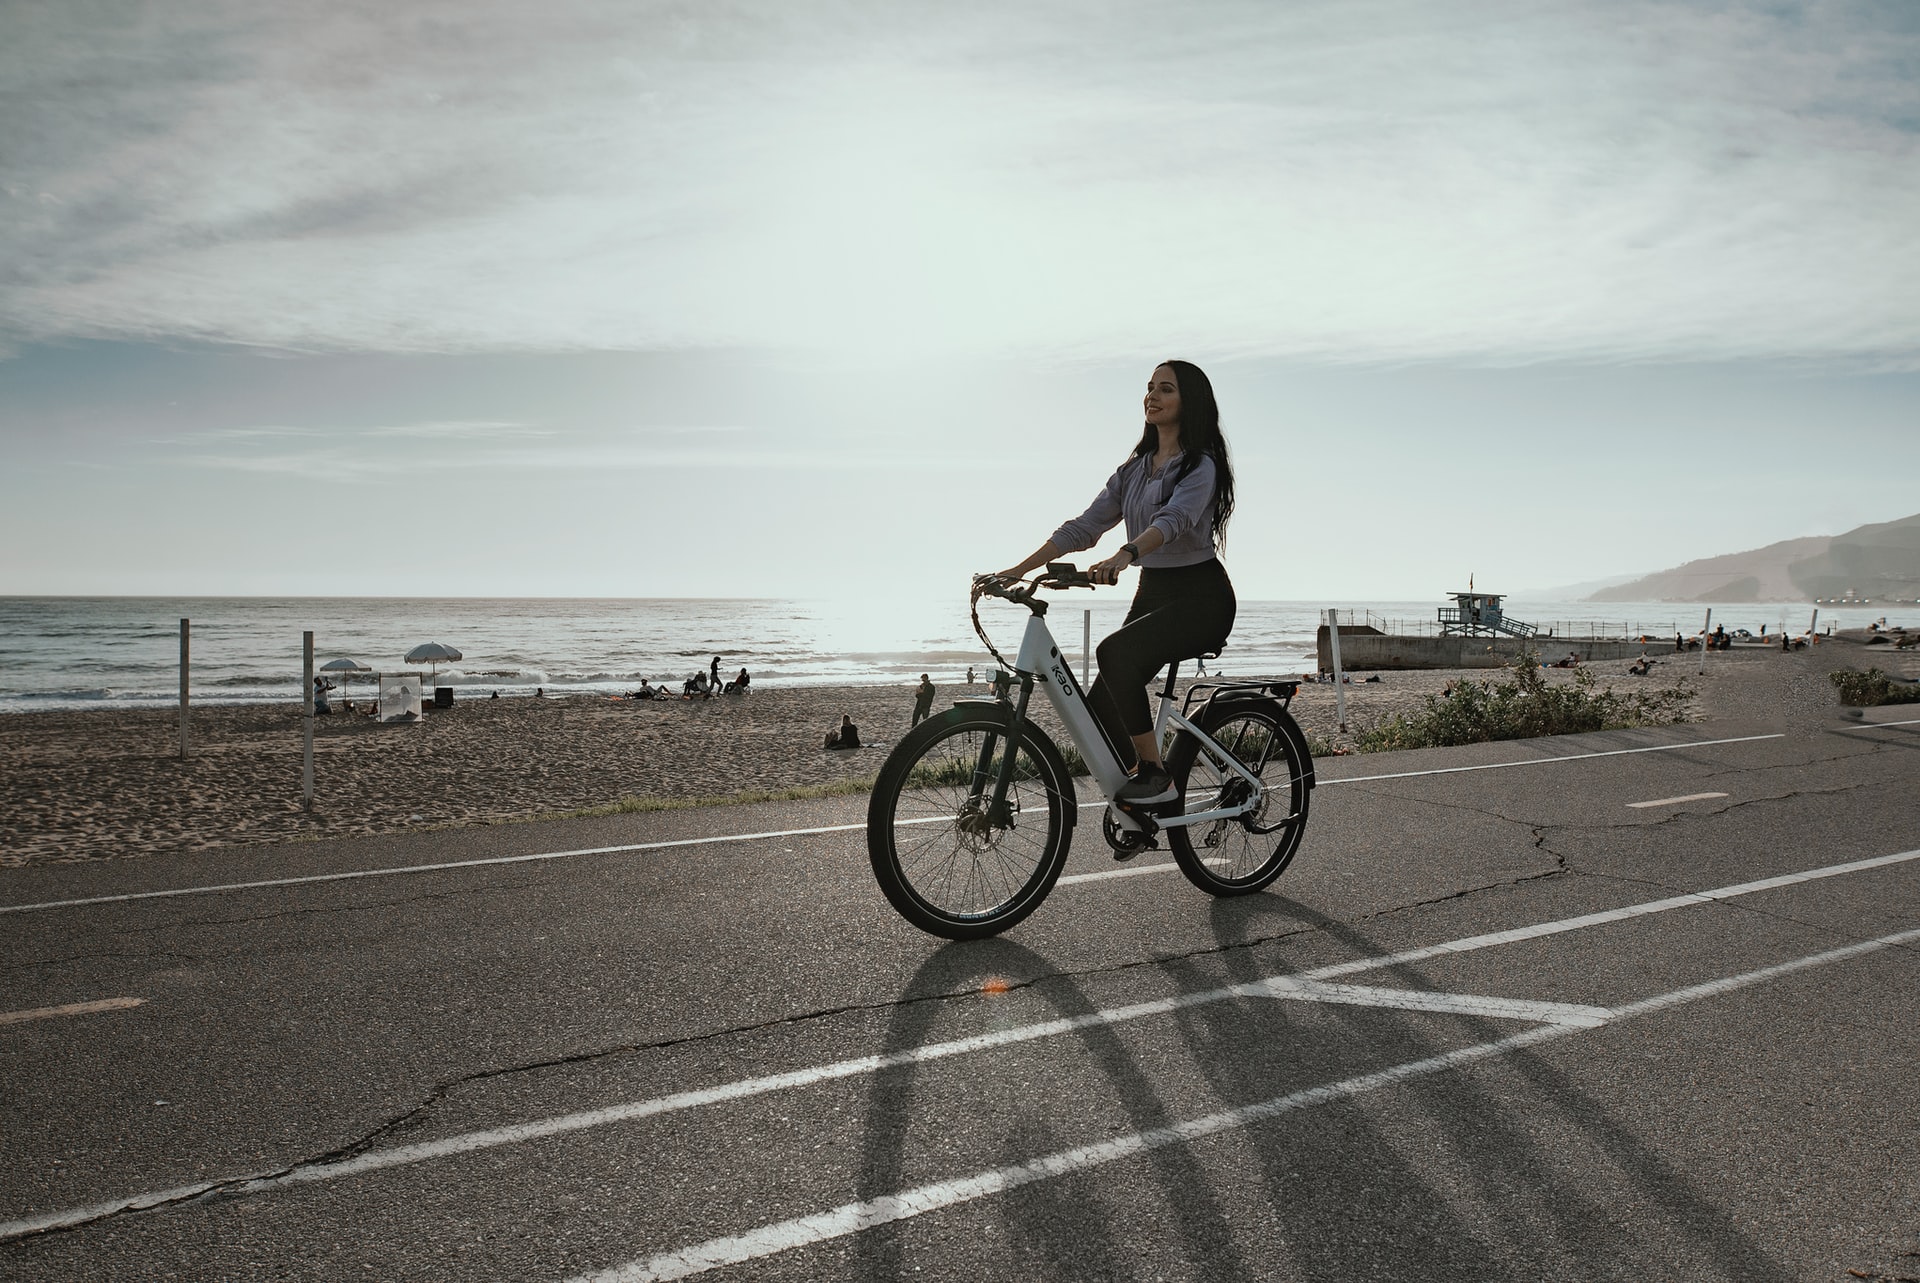 Køb en lækker el-cykel og kom i gang med at cykle!